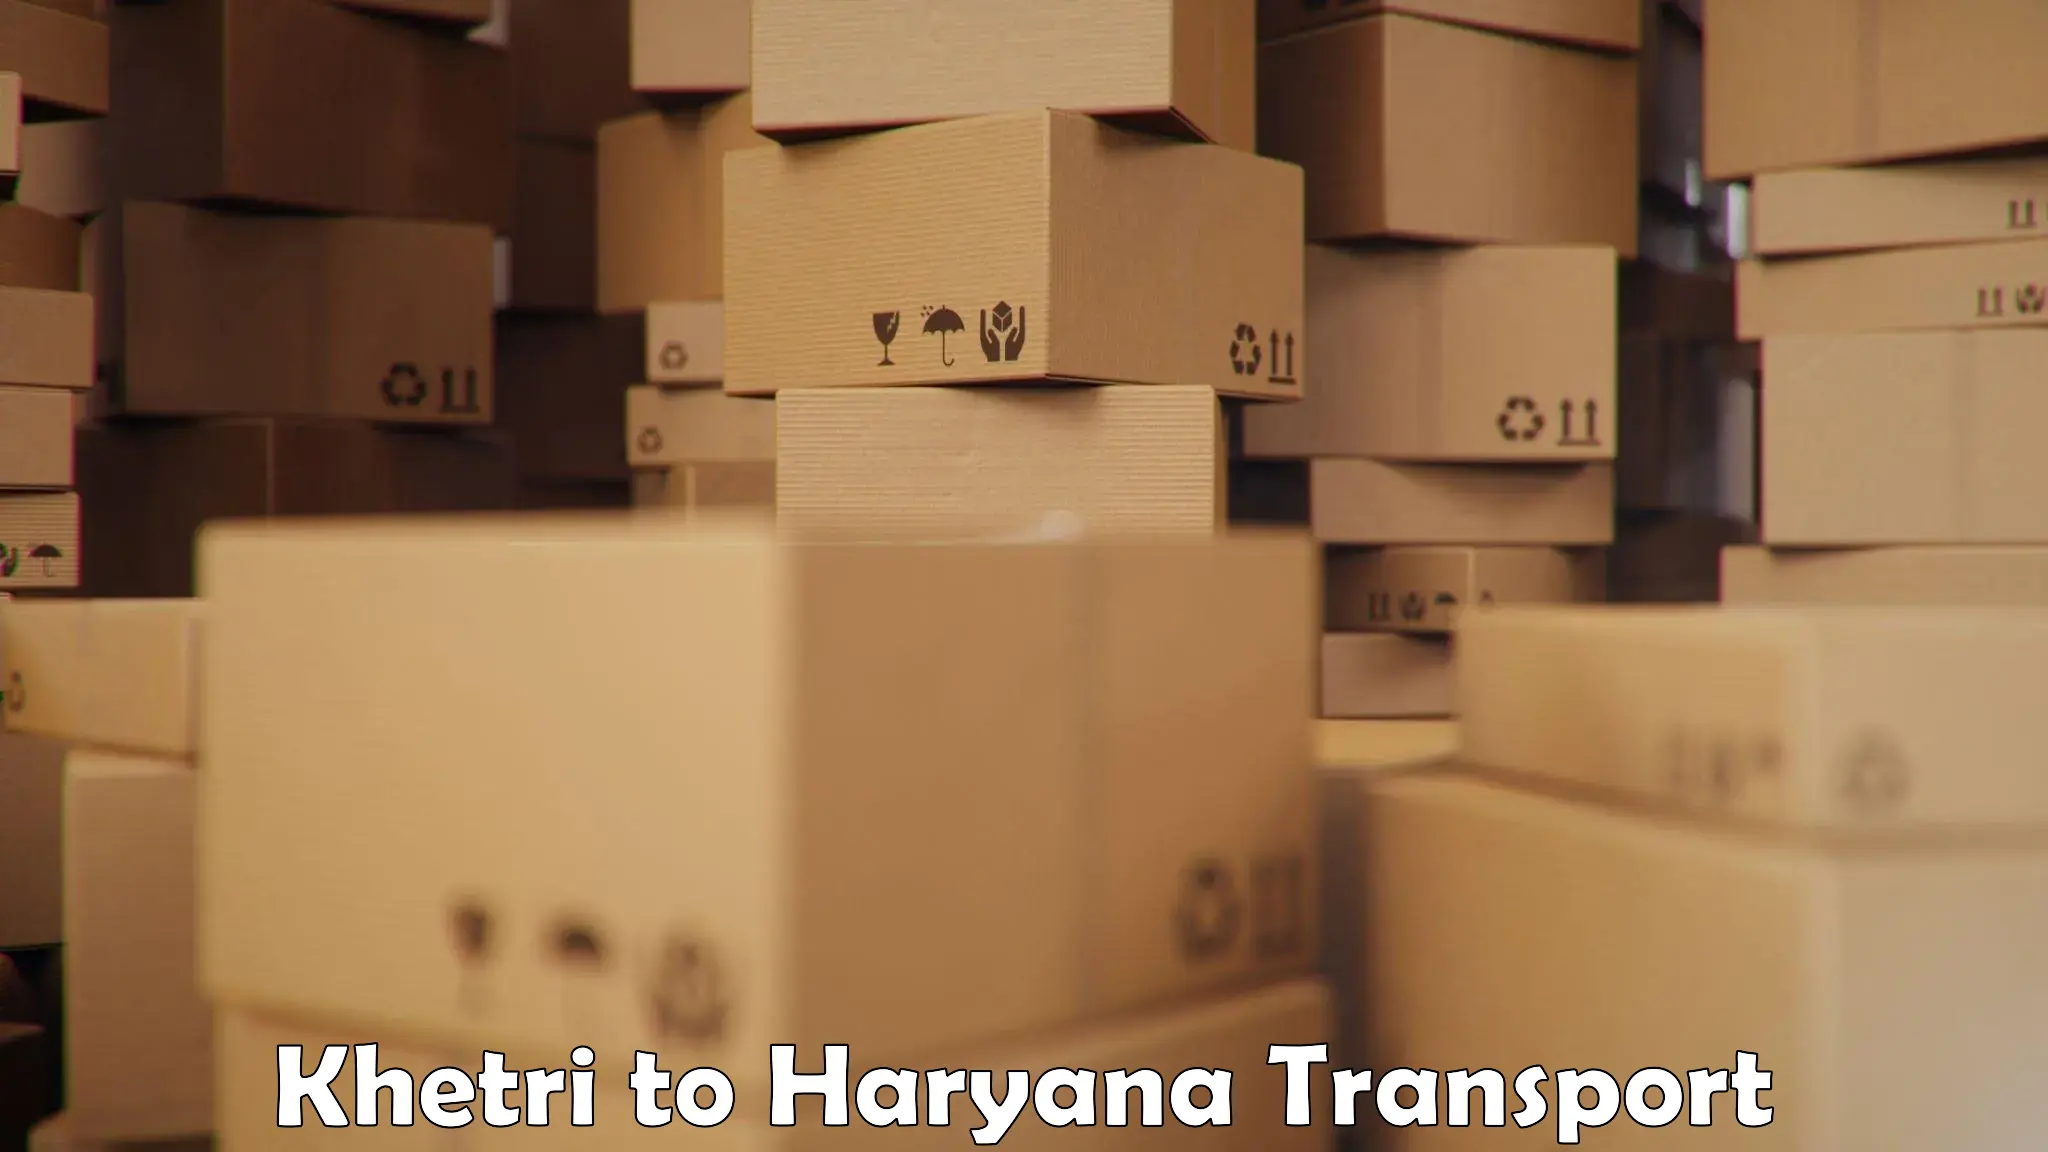 Daily transport service Khetri to Haryana